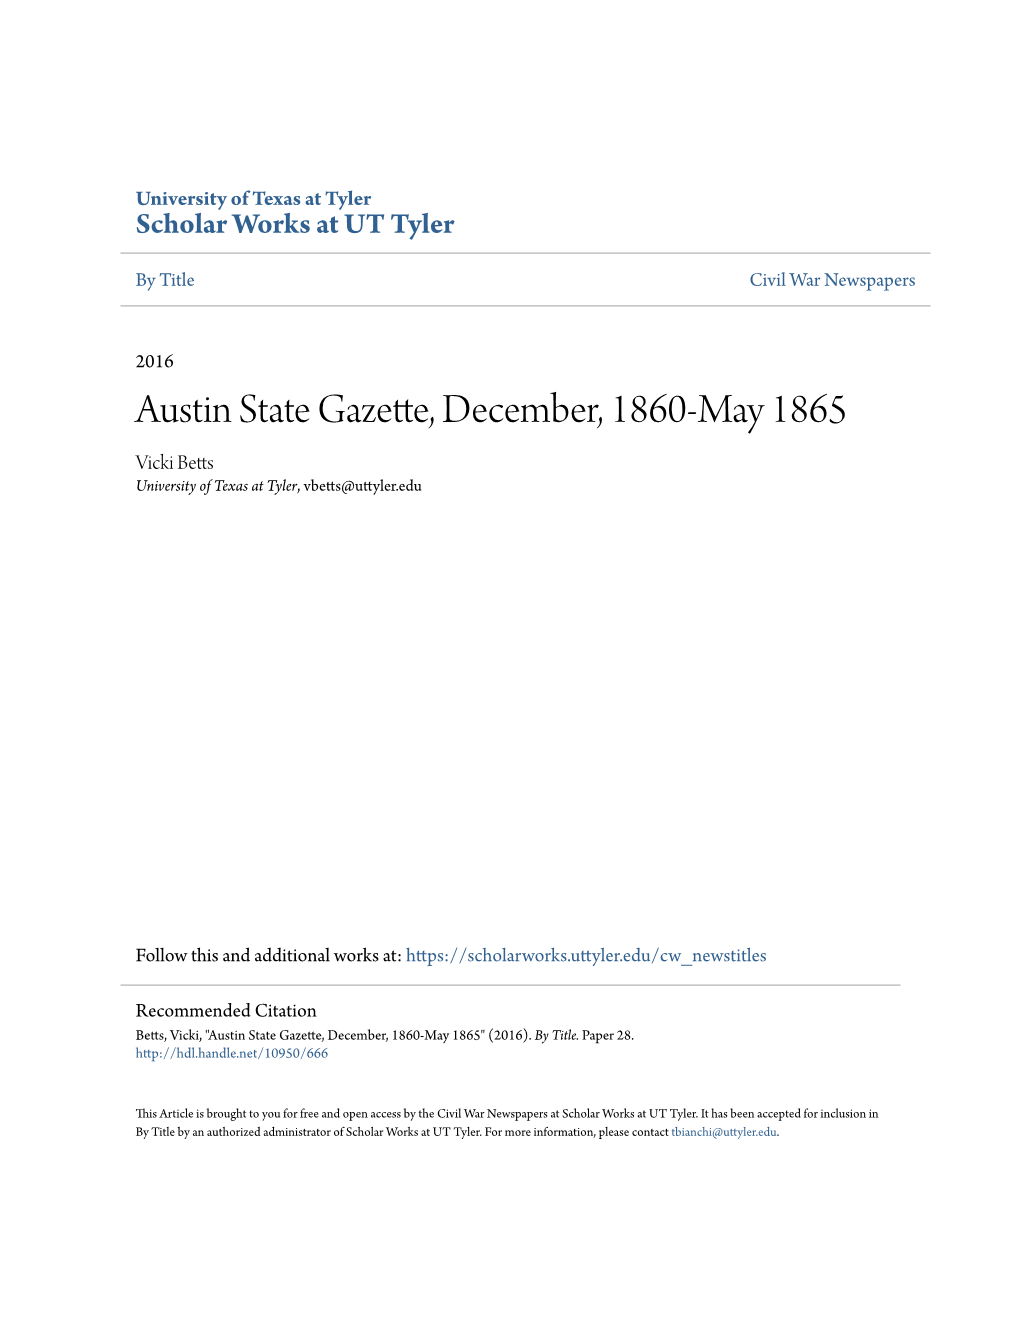 Austin State Gazette, December, 1860-May 1865 Vicki Betts University of Texas at Tyler, Vbetts@Uttyler.Edu